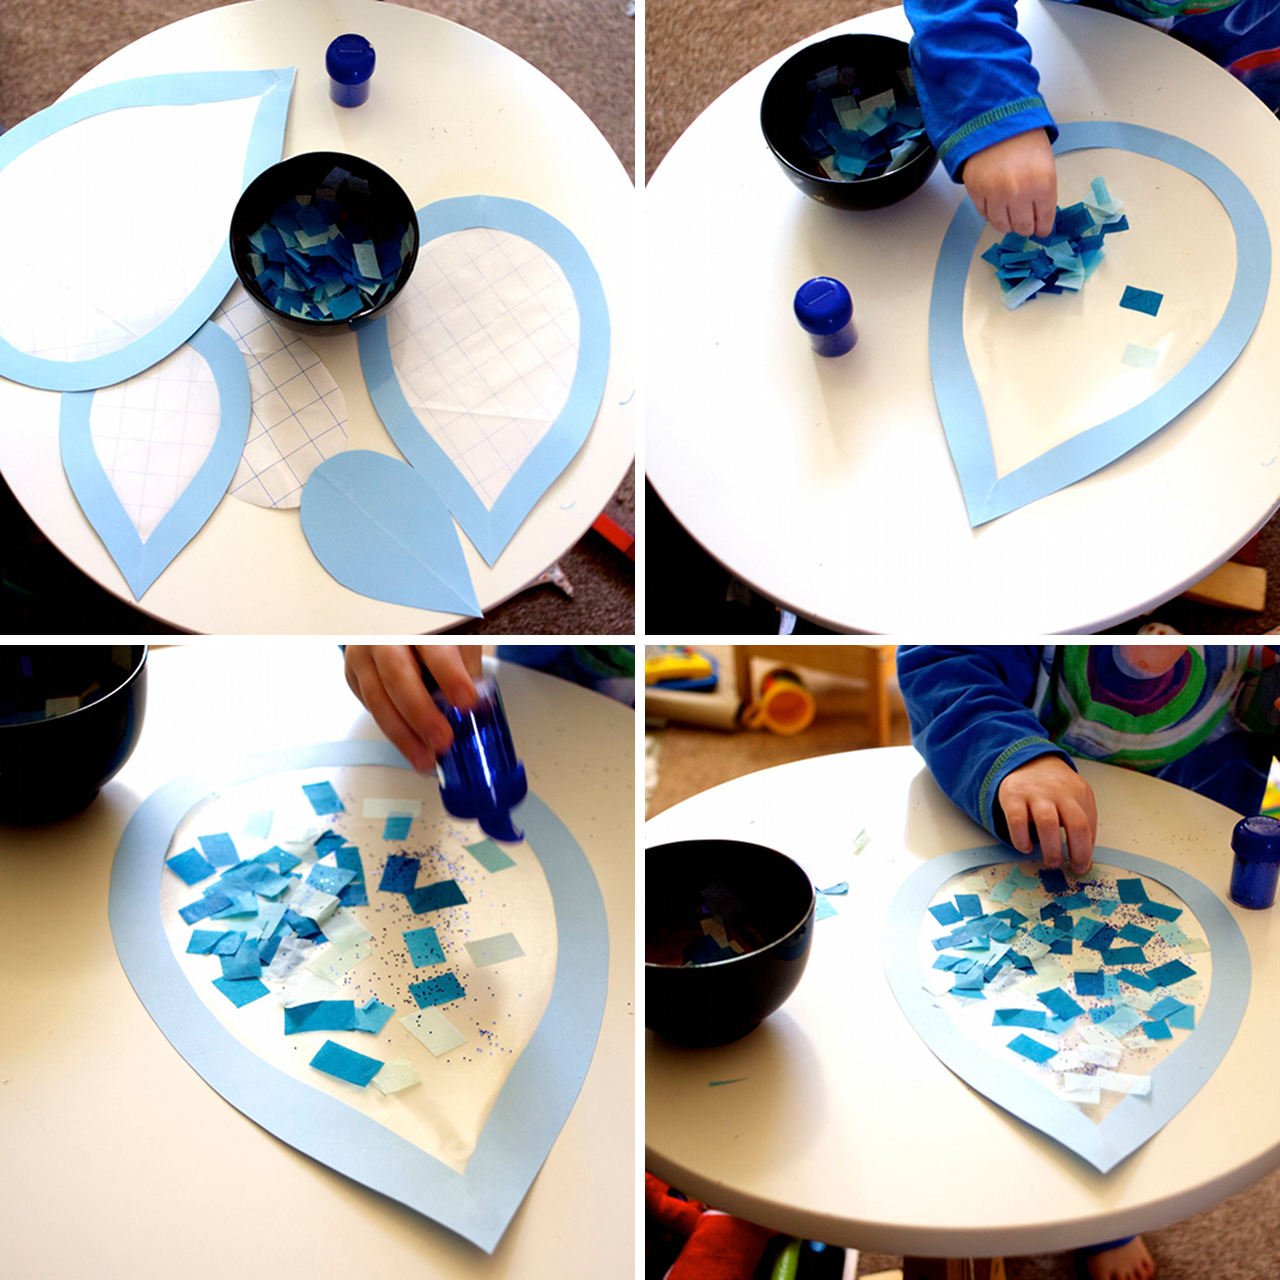 💧✂🤲 Kreatív, játékos ötlet a közelgő víz világnapja alkalmából 🙂

Készítsetek kisebb-nagyobb vízcseppeket, majd kockázzatok több féle kék papírt és mozaiktechnikával díszítsétek ki a cseppeket 🙂 A játék közben ügyesednek a kezek, a szem-kéz koordináció 🙂

#vízvilágnapja #ötlet #alkotnivaló #ovisoknak #anyamesélj